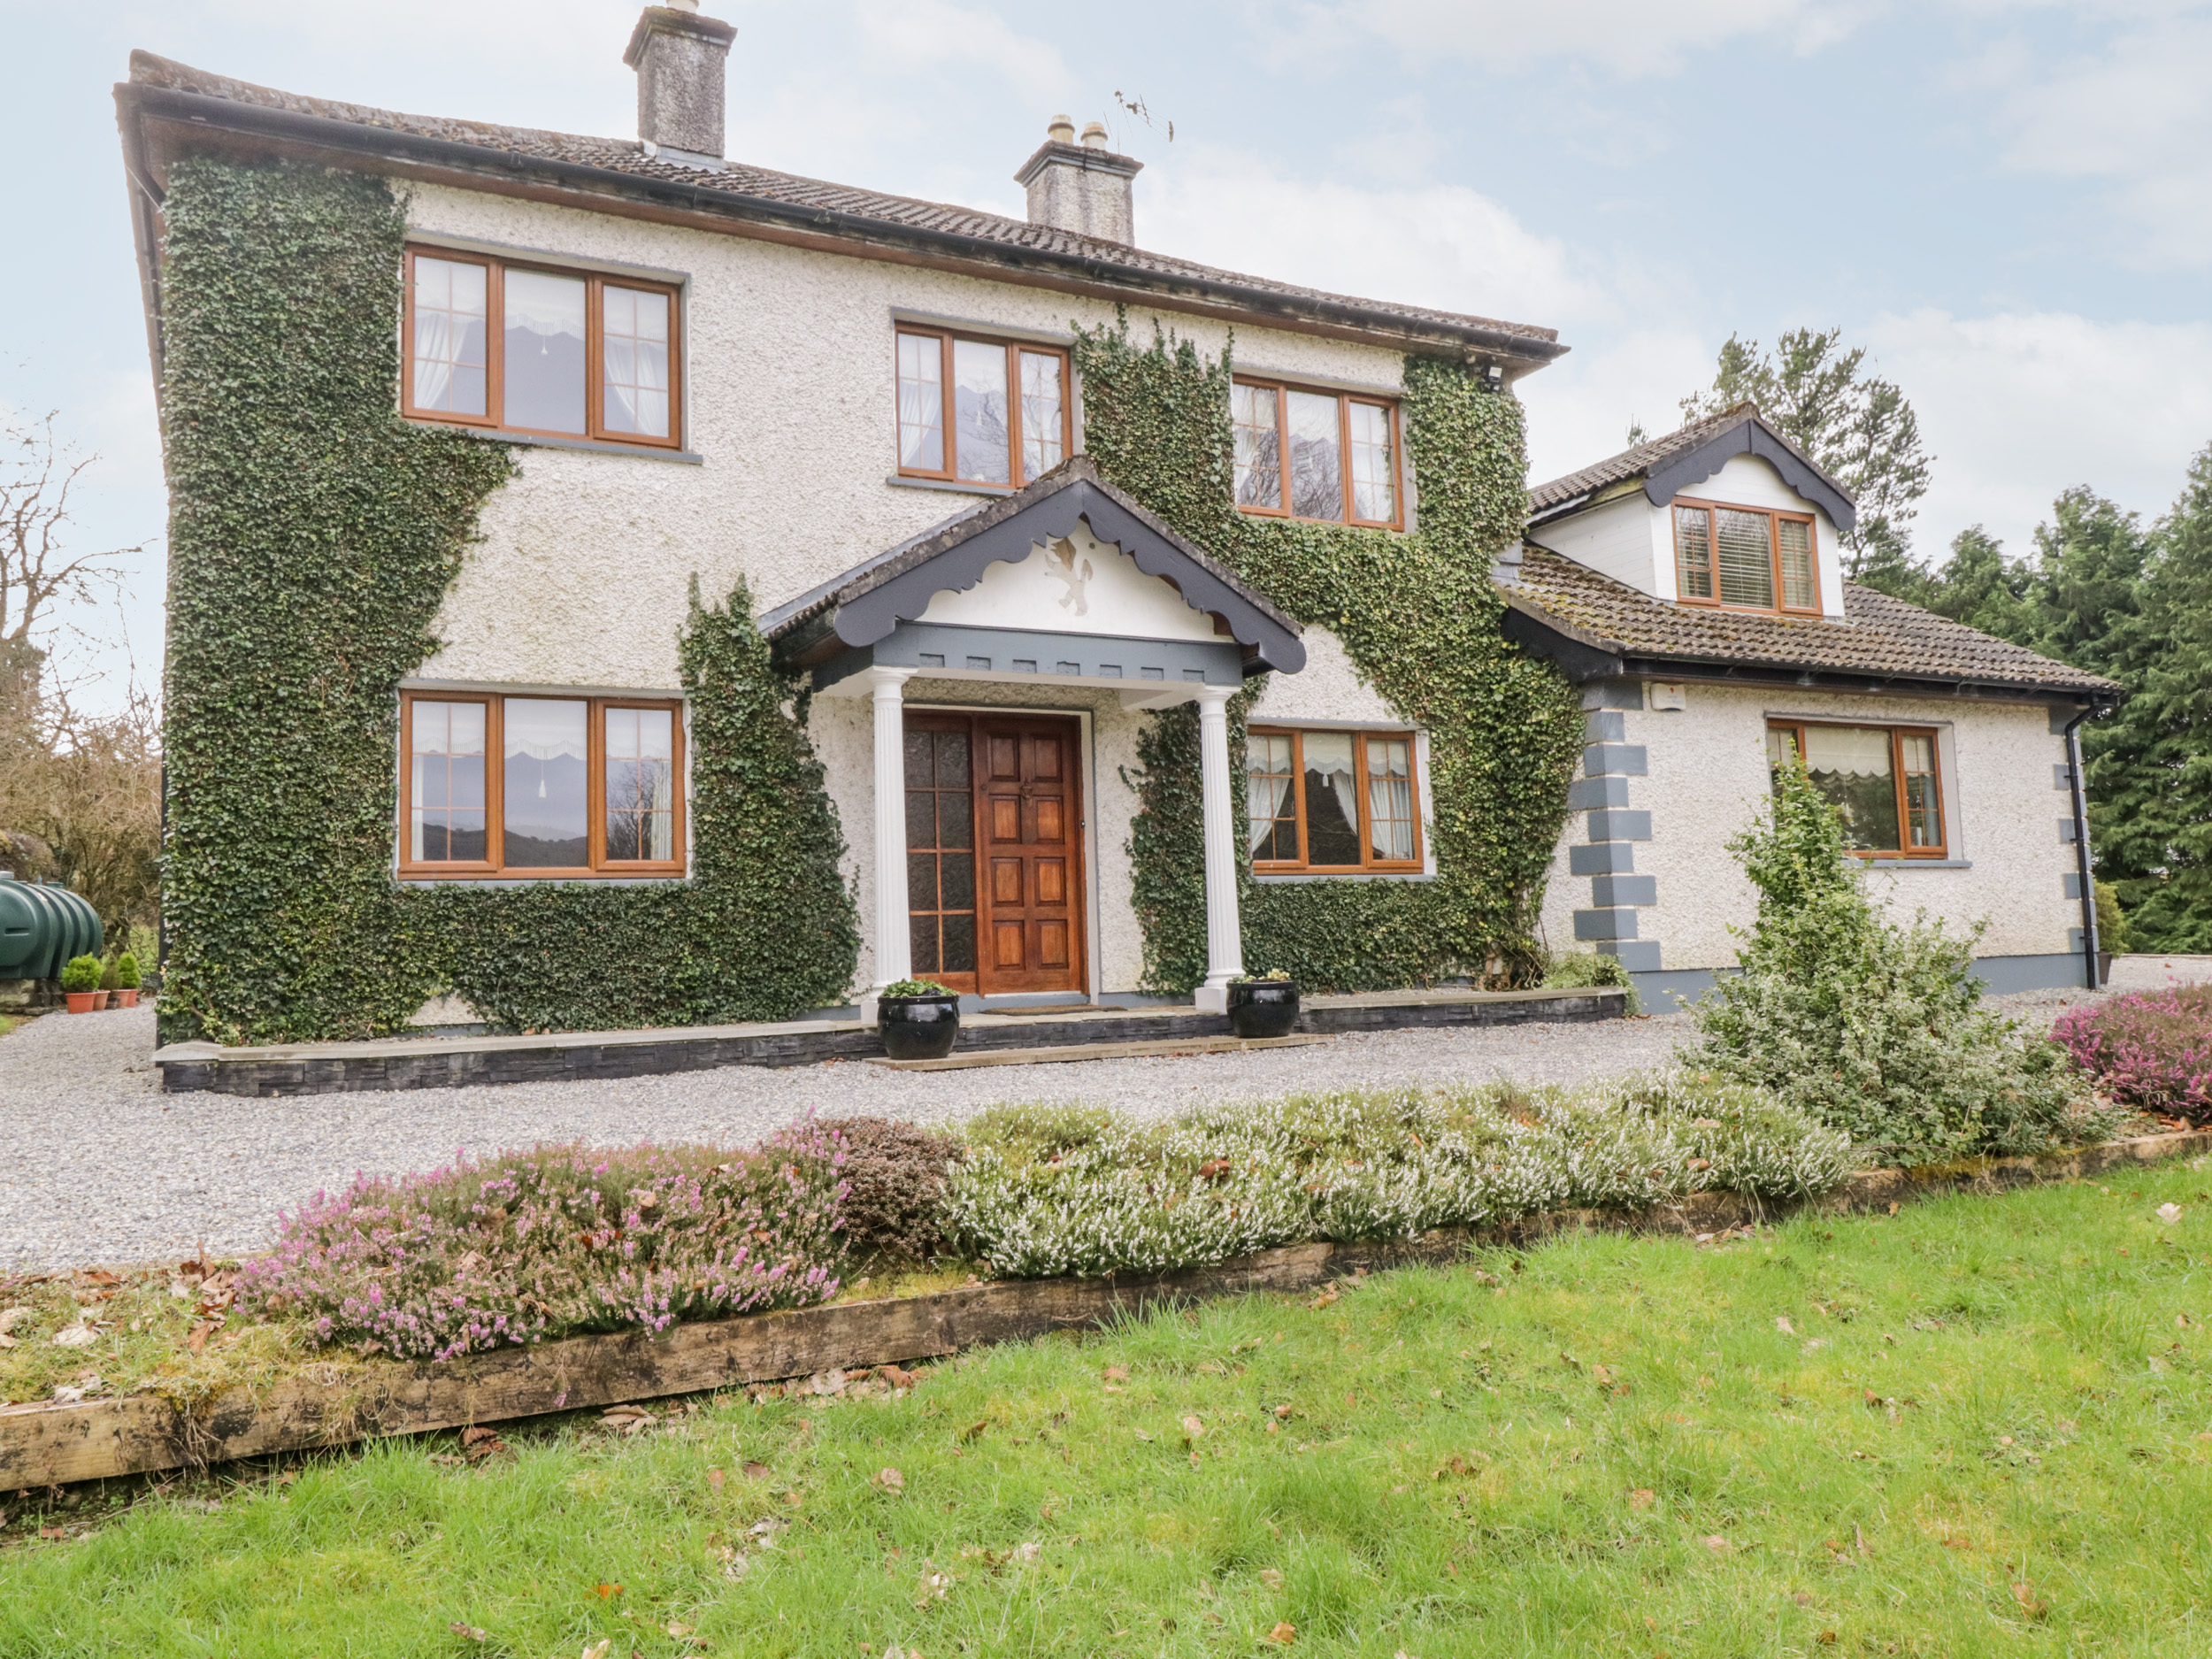 Ivy House, County Sligo